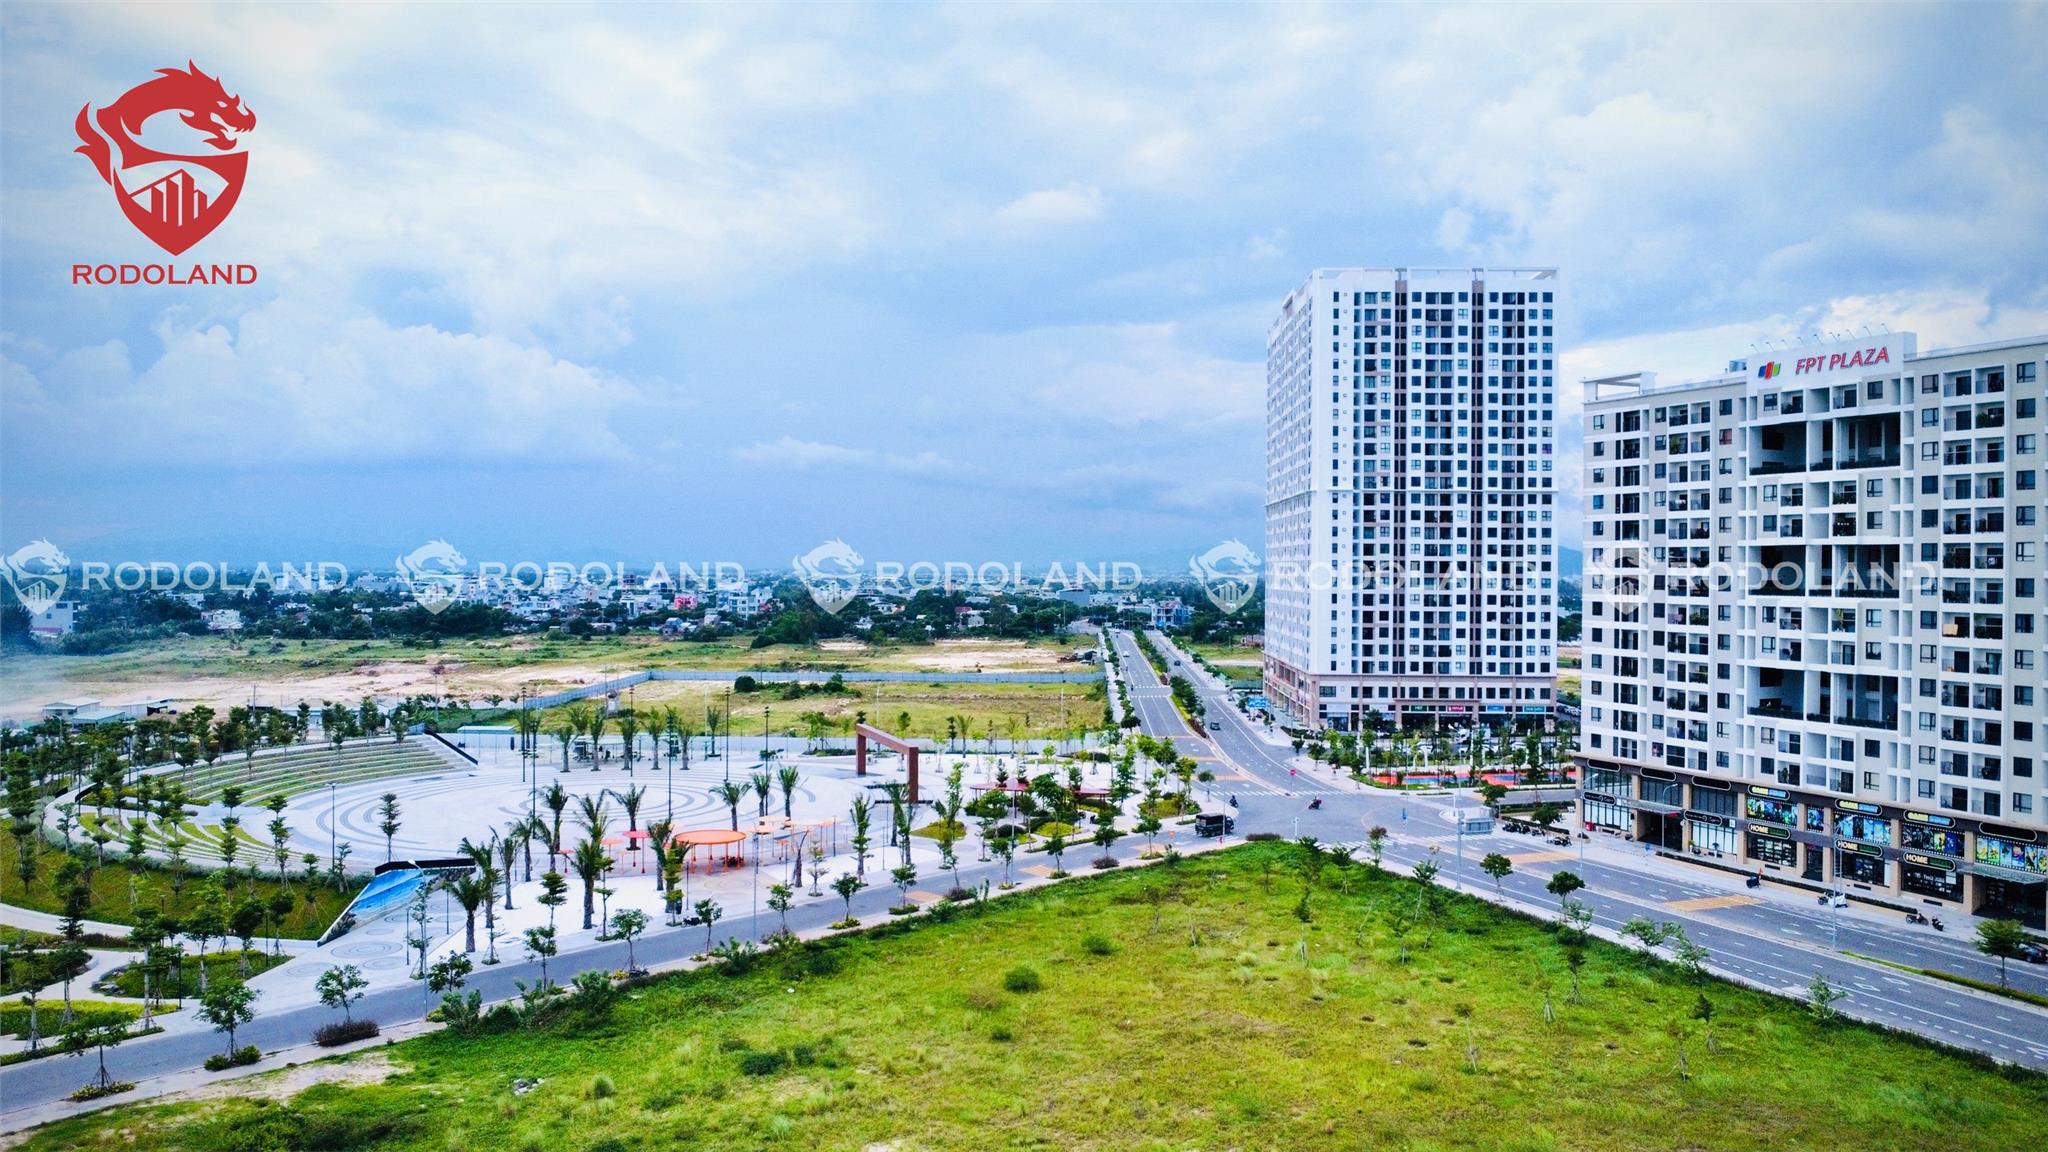 CHUYÊN FPT PLAZA: Cần mua căn hộ FPT Plaza 1 & 2 Đà Nẵng – Hãy gọi BĐS Rồng Đỏ 0905.31.89.88 1